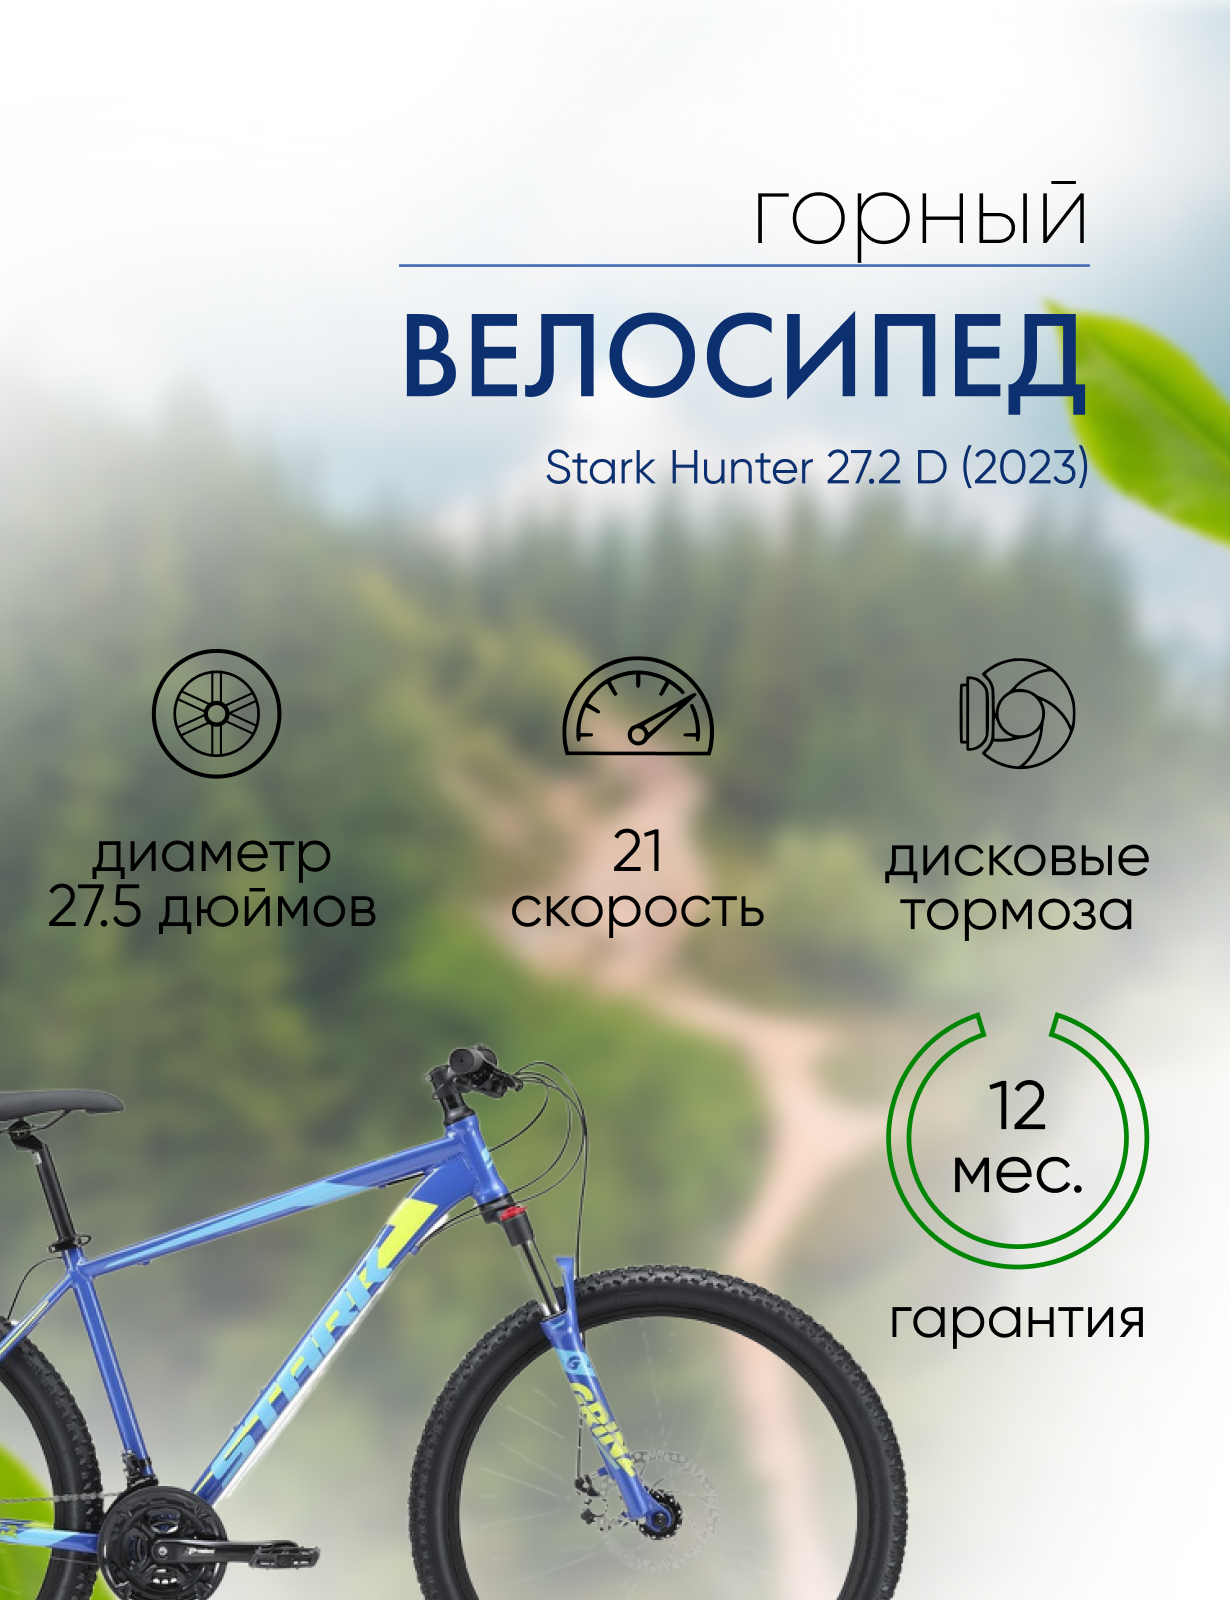 Горный велосипед Stark Hunter 27.2 D, год 2023, цвет Синий-Голубой, ростовка 16